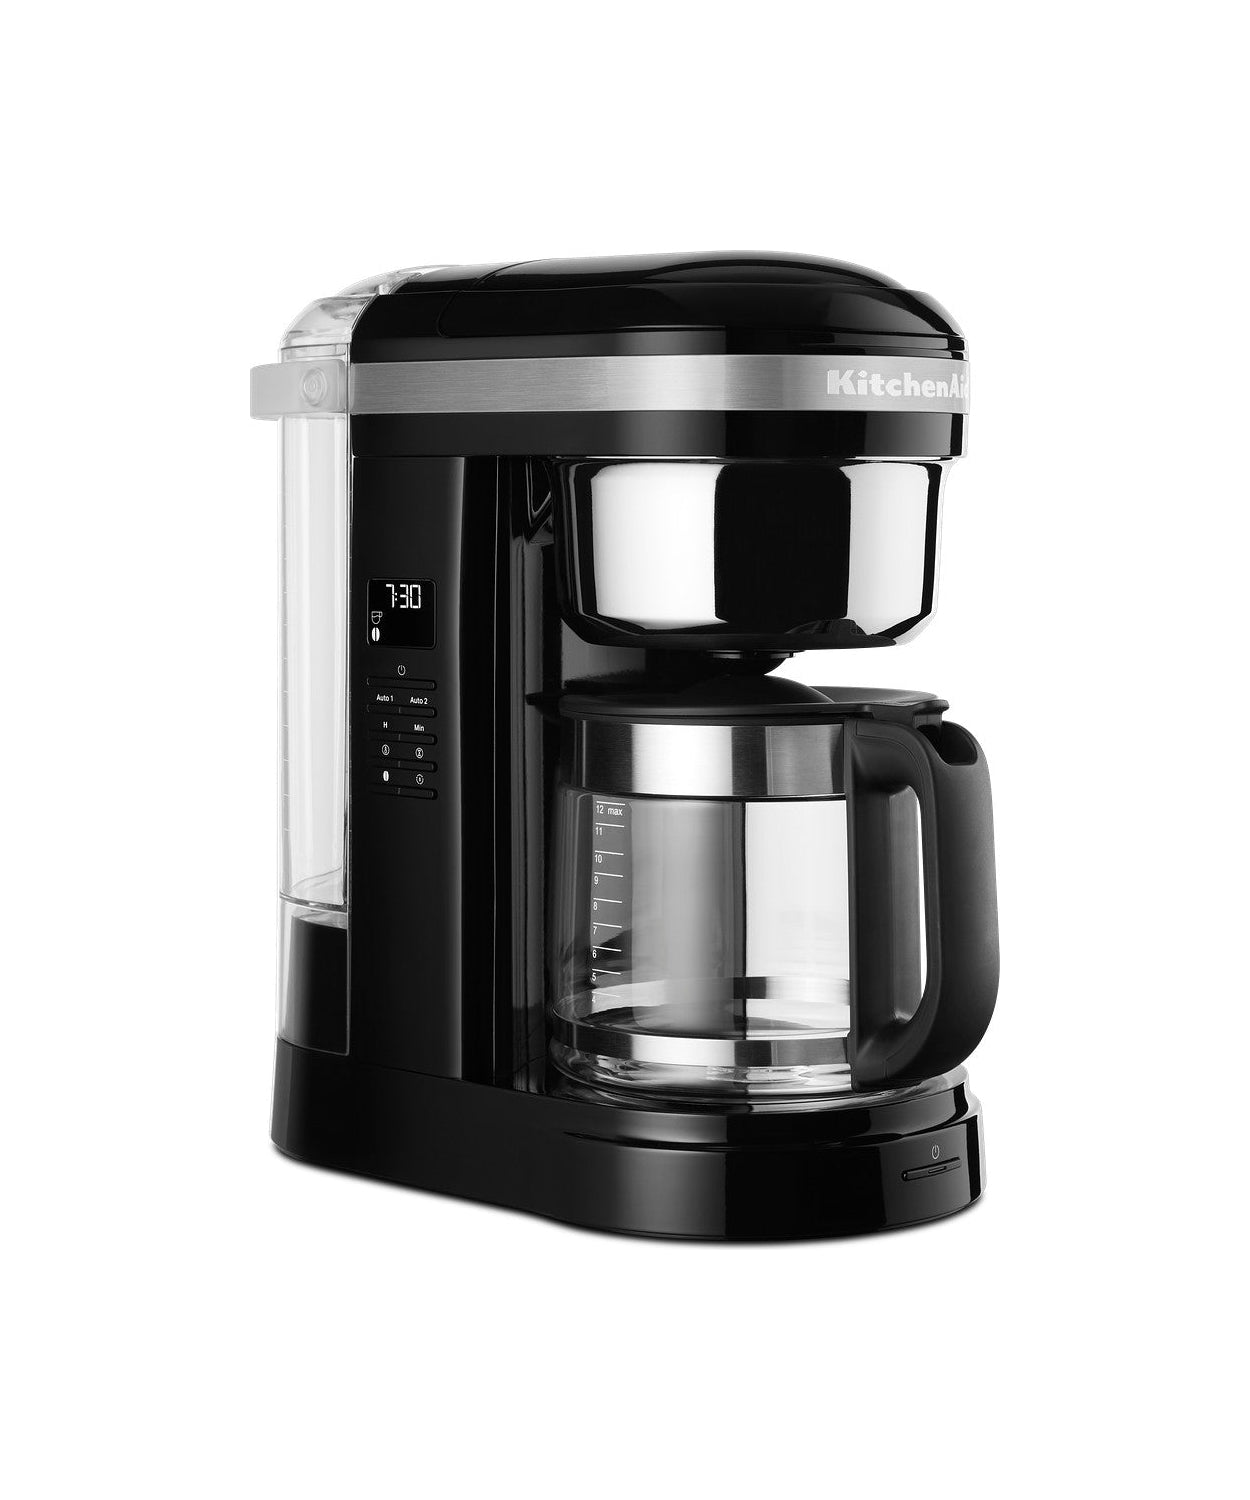 Kjøkkenhjelp 5 KCM1209 Filter Kaffemaskin 1,7 L, Onyx Black